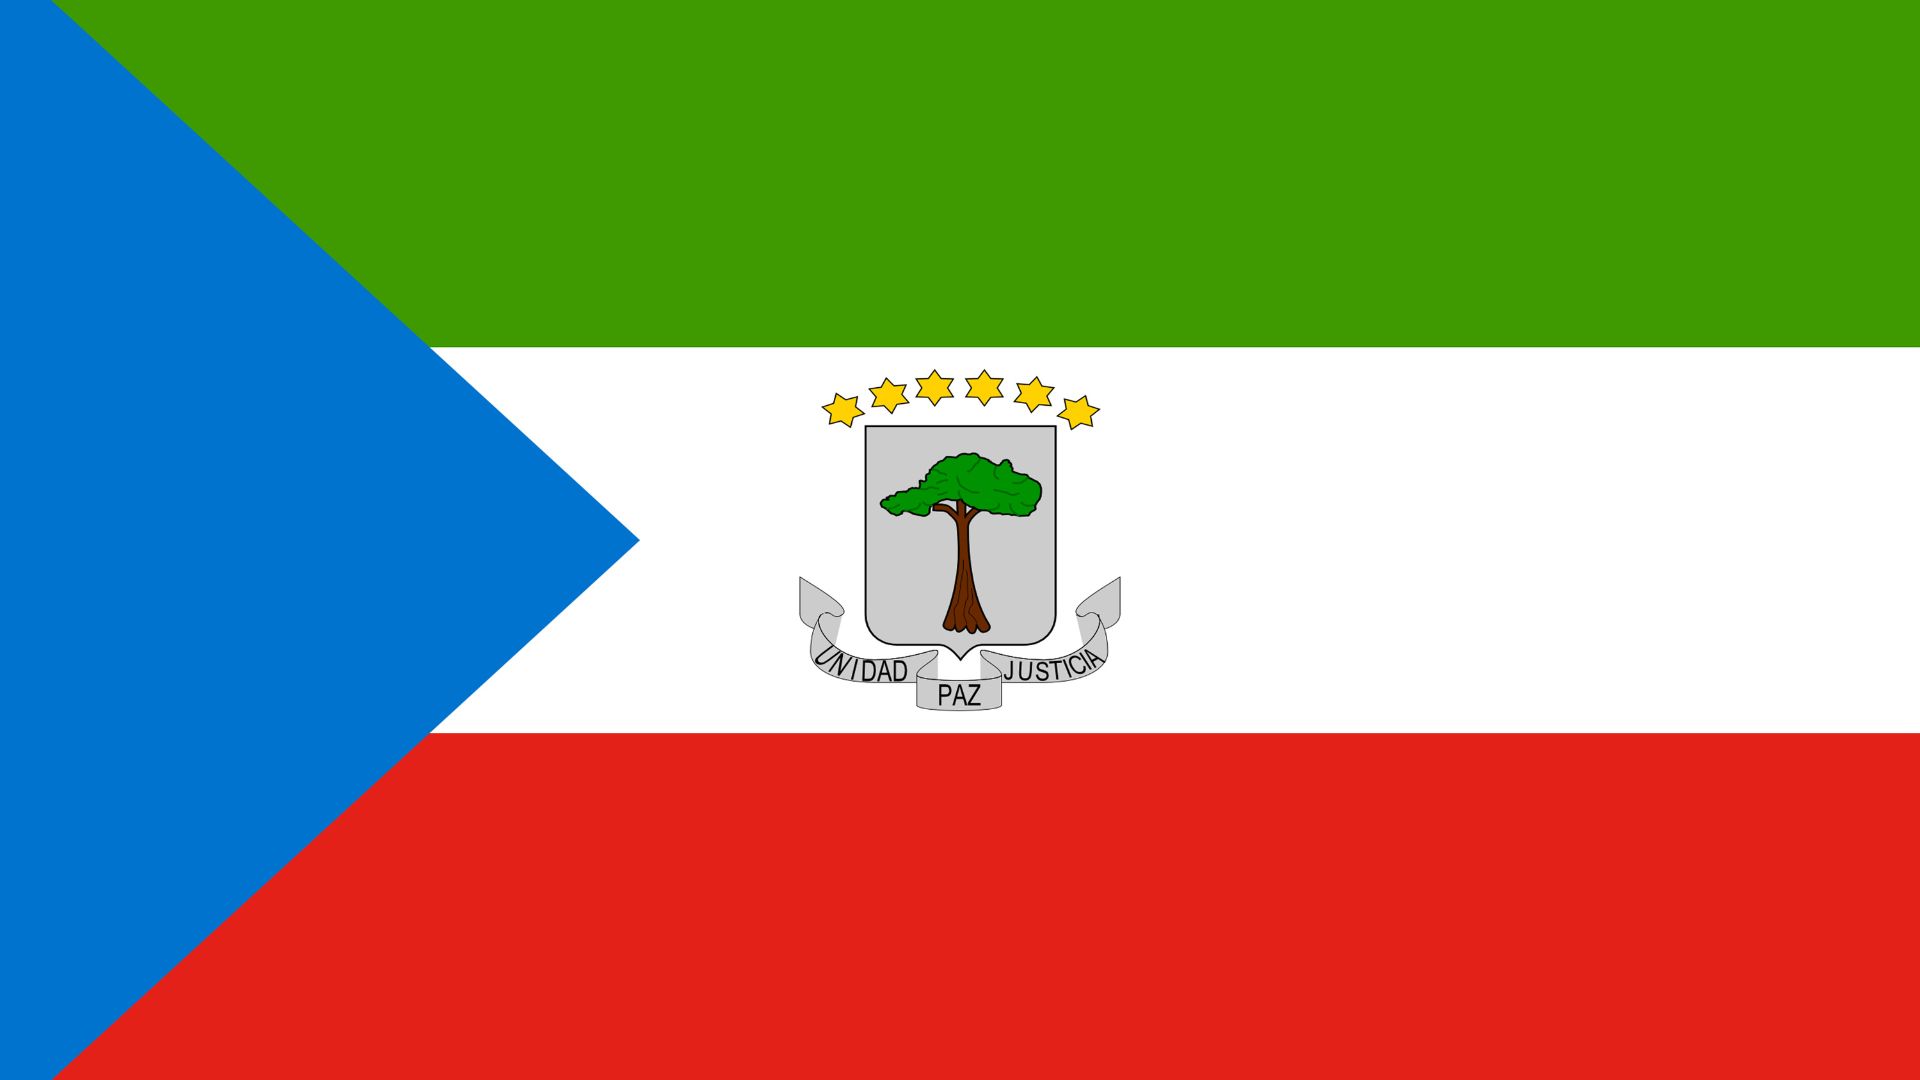 A bandeira é representada pelas cores verde, azul, branco e vermelho. A cor verde representa a vegetação do país, o azul representa o mar, o branco a paz, e o vermelho a independência.